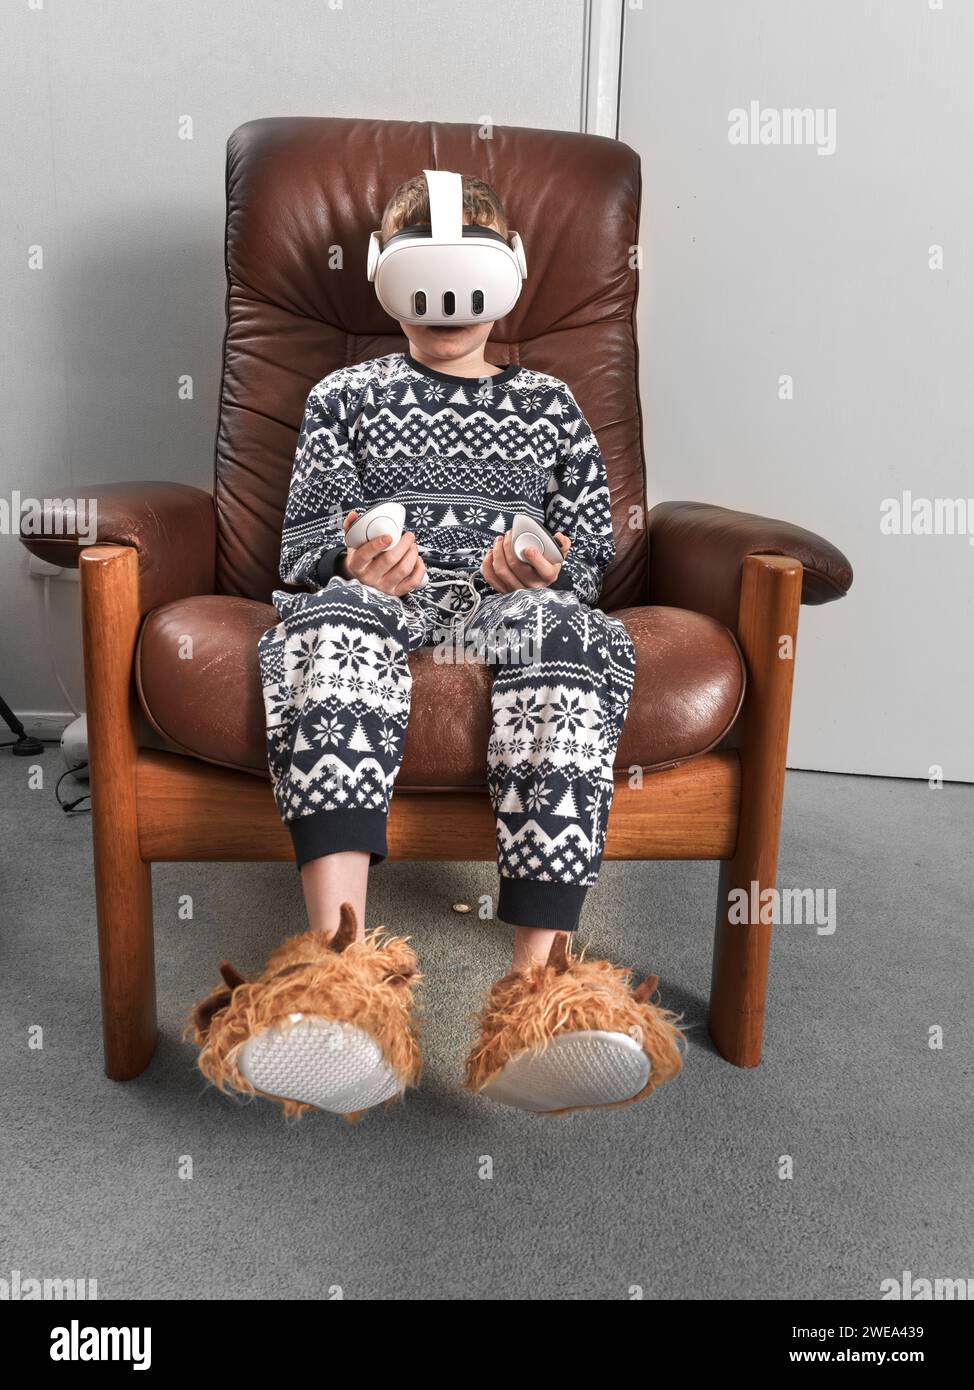 Un ensemble de réalité virtuelle donné comme cadeau de chirstmas est utilisé par un jeune garçon assis sur une chaise. Banque D'Images